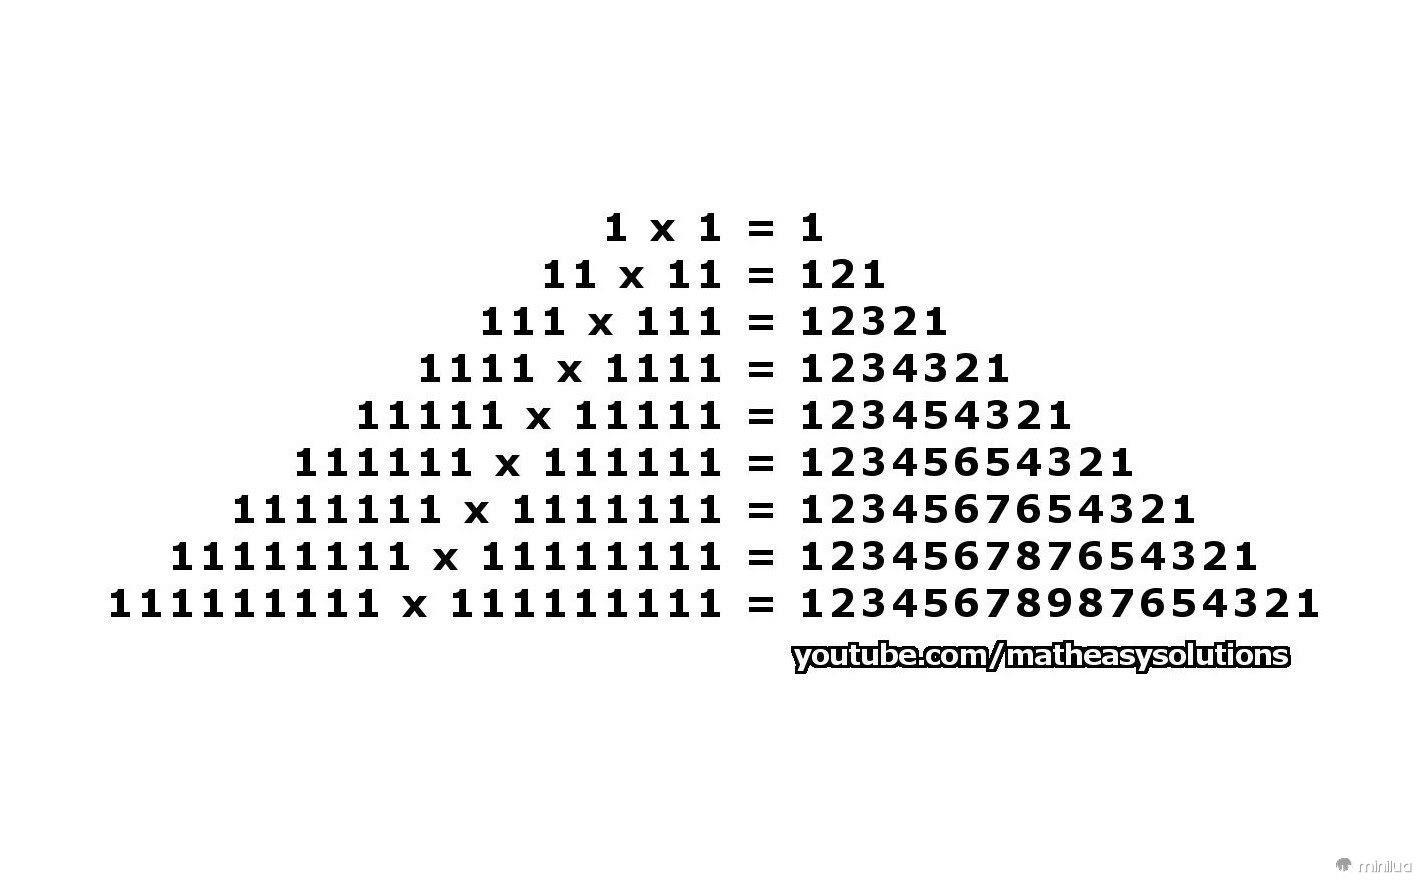 Resultado de imagem para 111,111,111 x 111,111,111 = 12,345,678,987,654,321